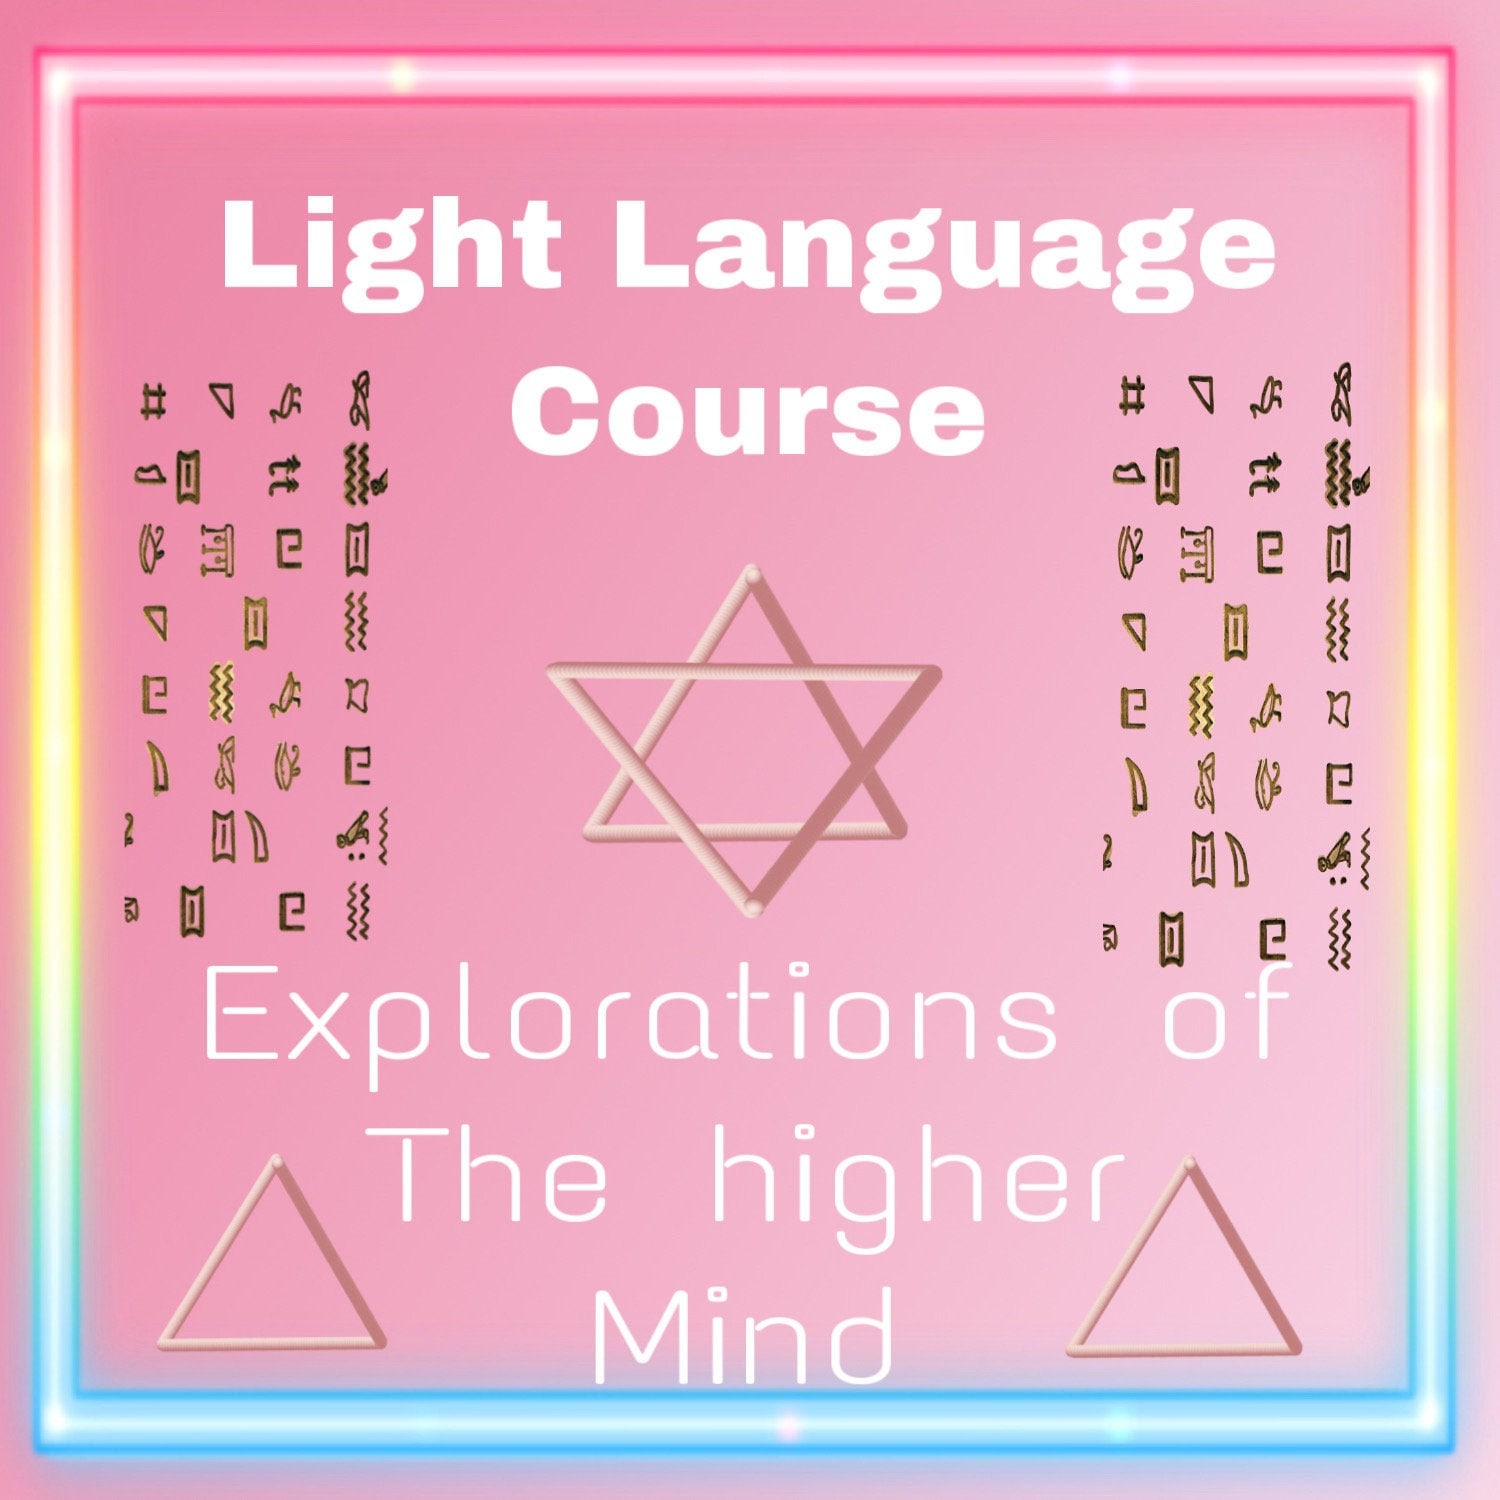 Language of light